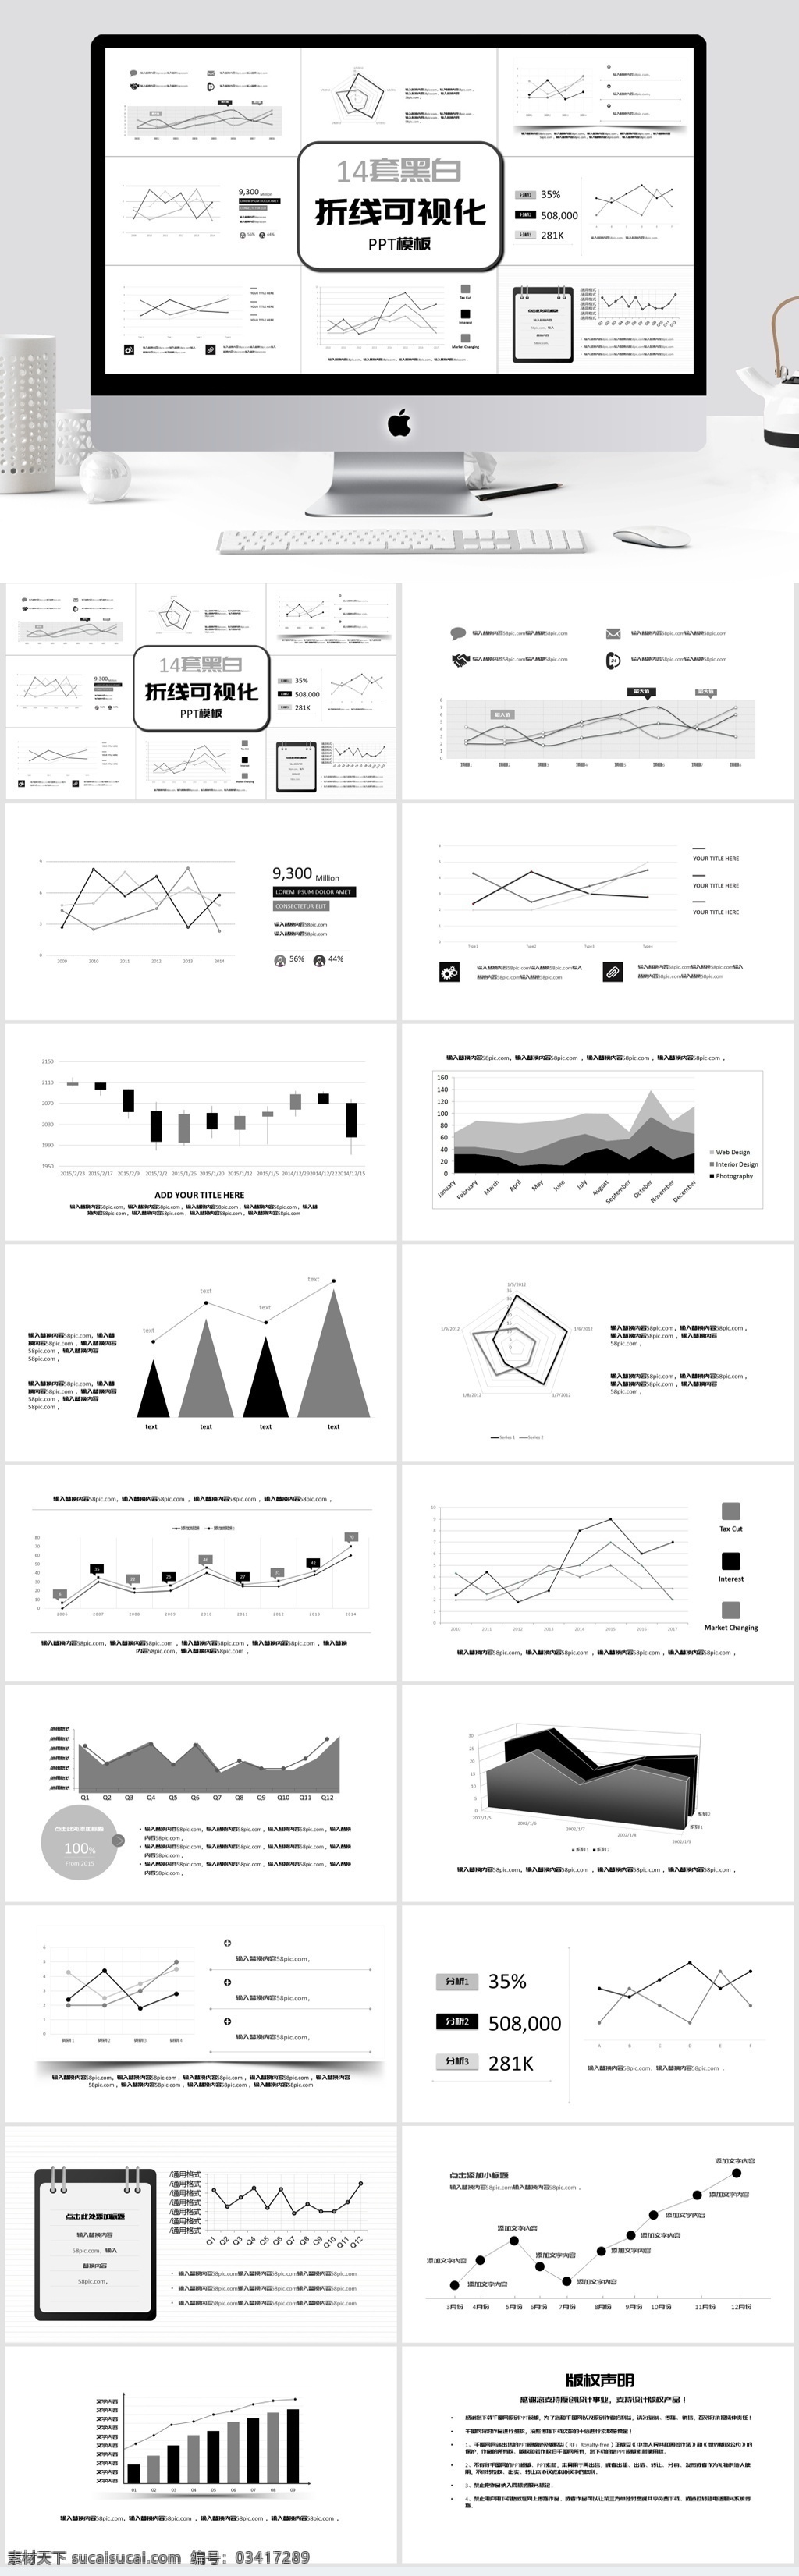 黑白 风格 折线 可视化 模板 ppt图表 图表 商务 总结 汇报 年终总结 折线信息